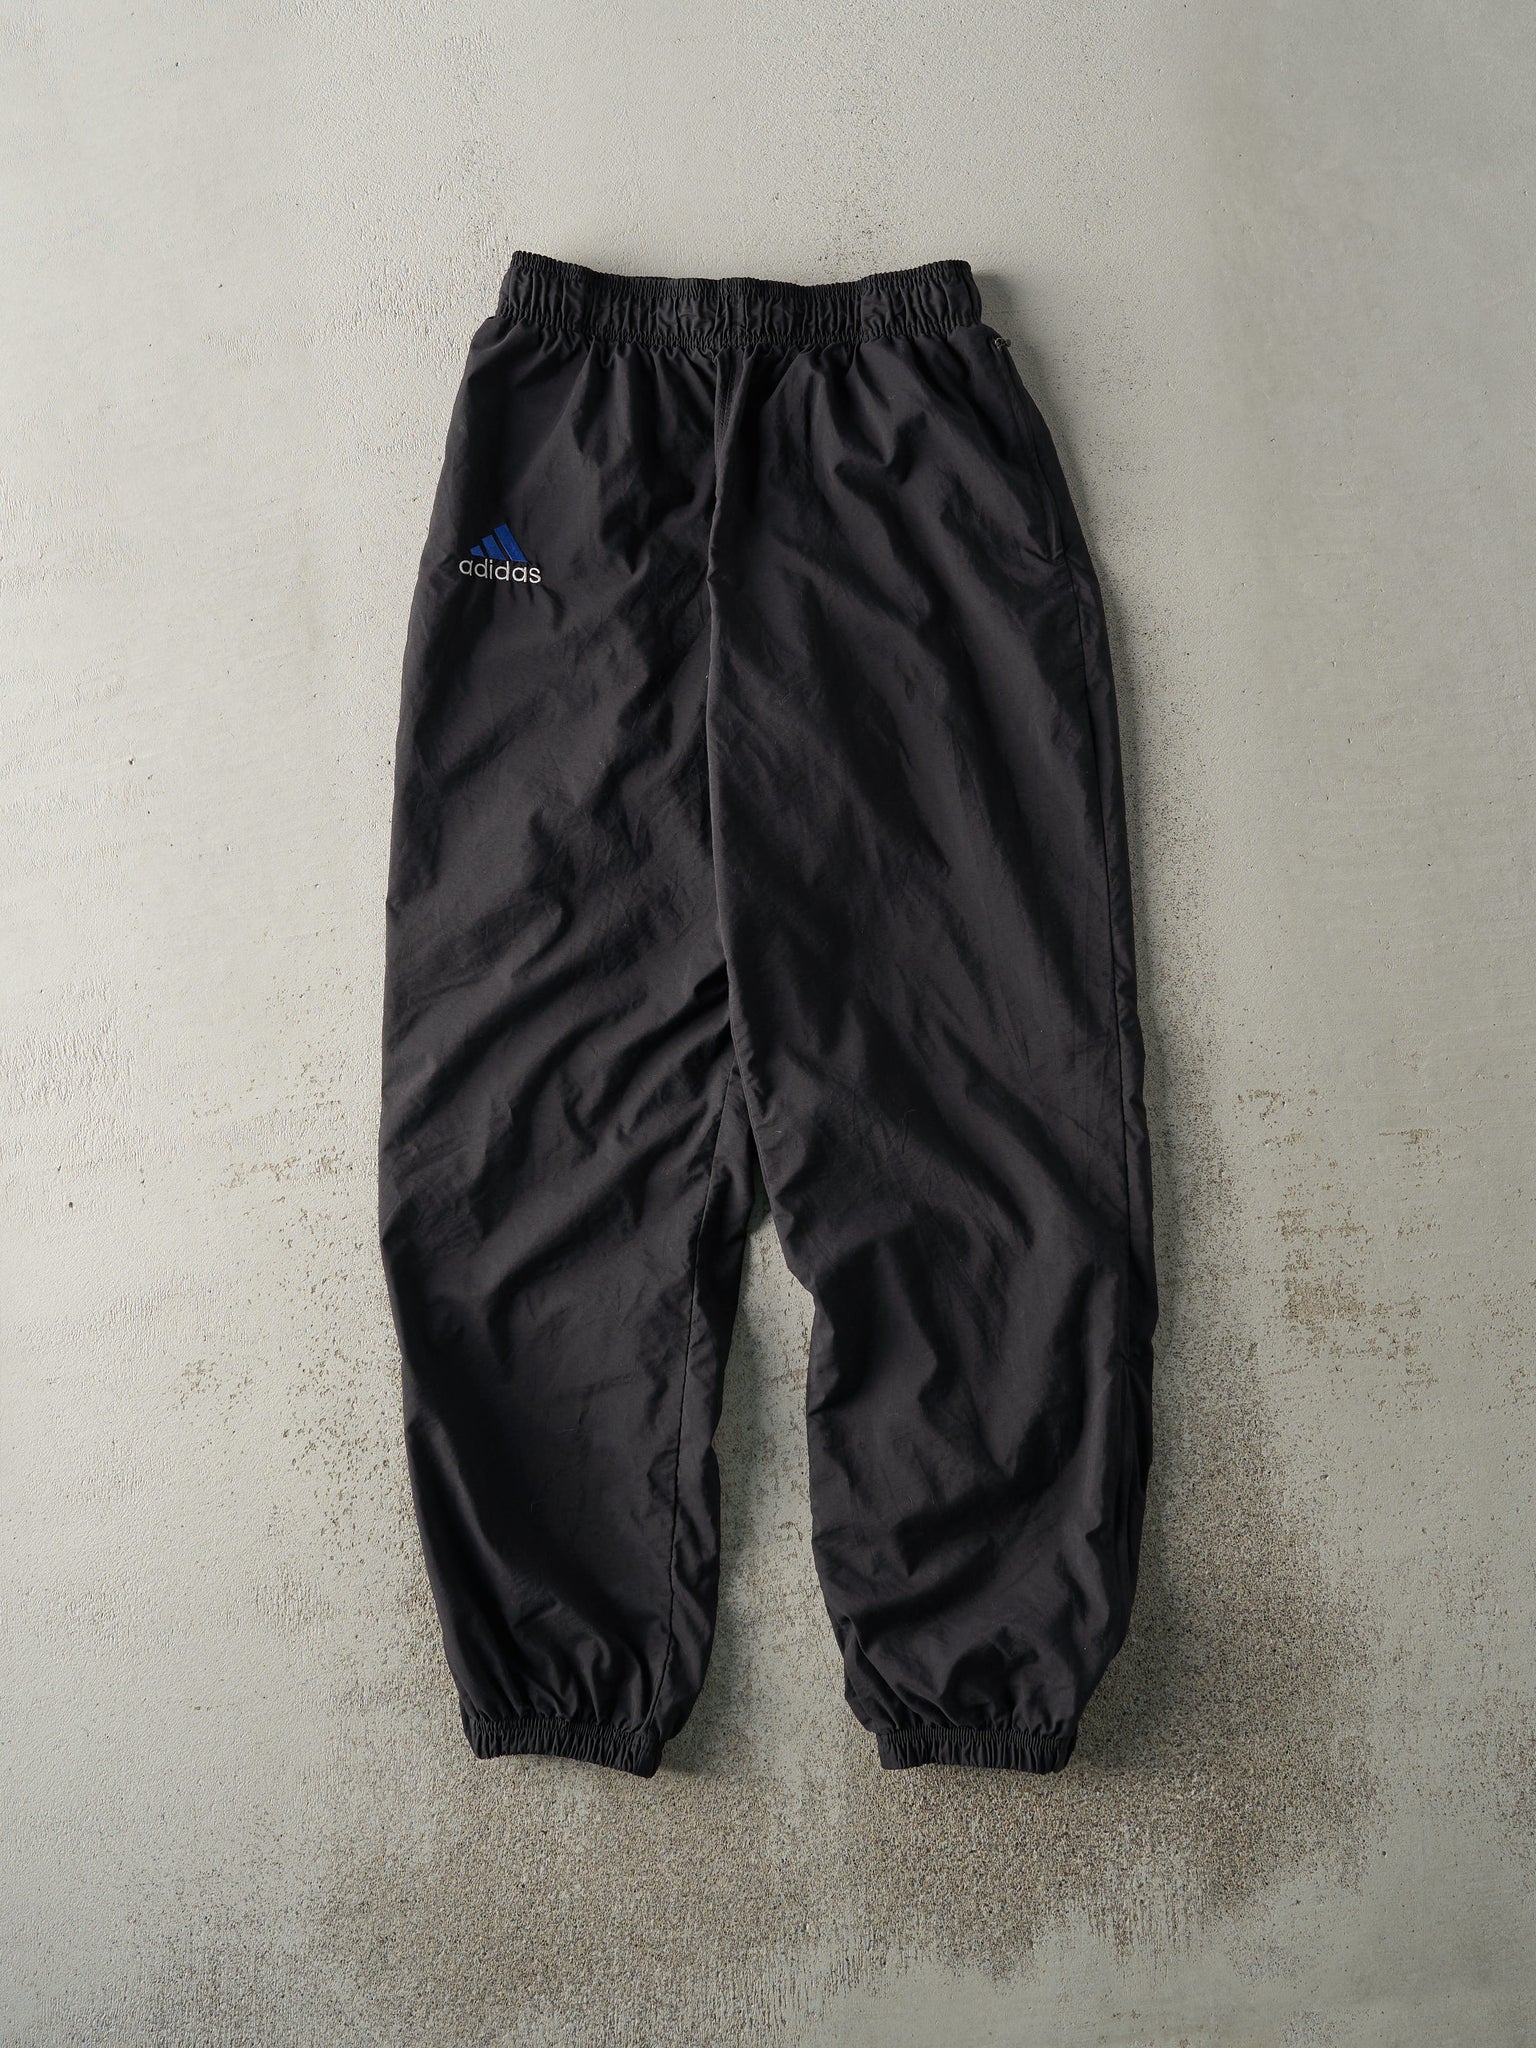 Vintage 90s Black Embroidered Adidas Windbreaker Pants (27x30)